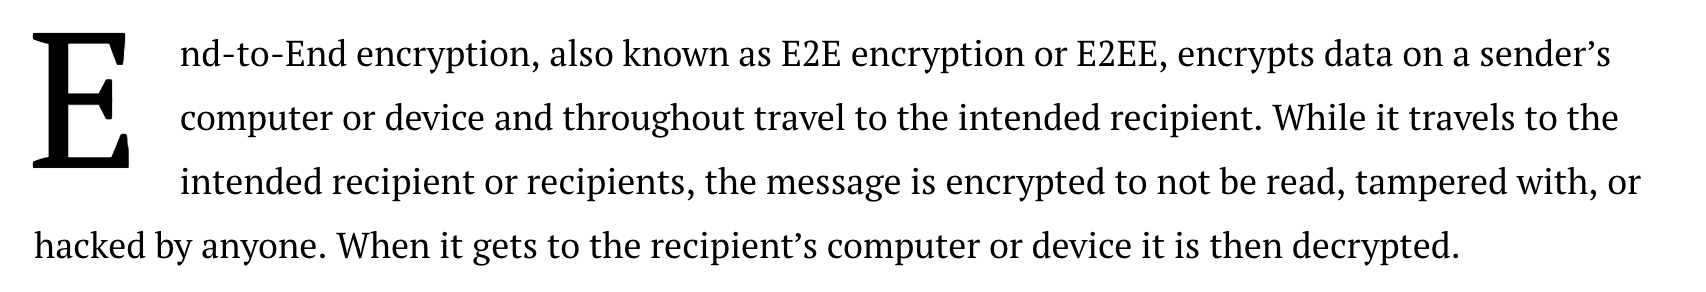 End to end encryption definition zangi messenger 